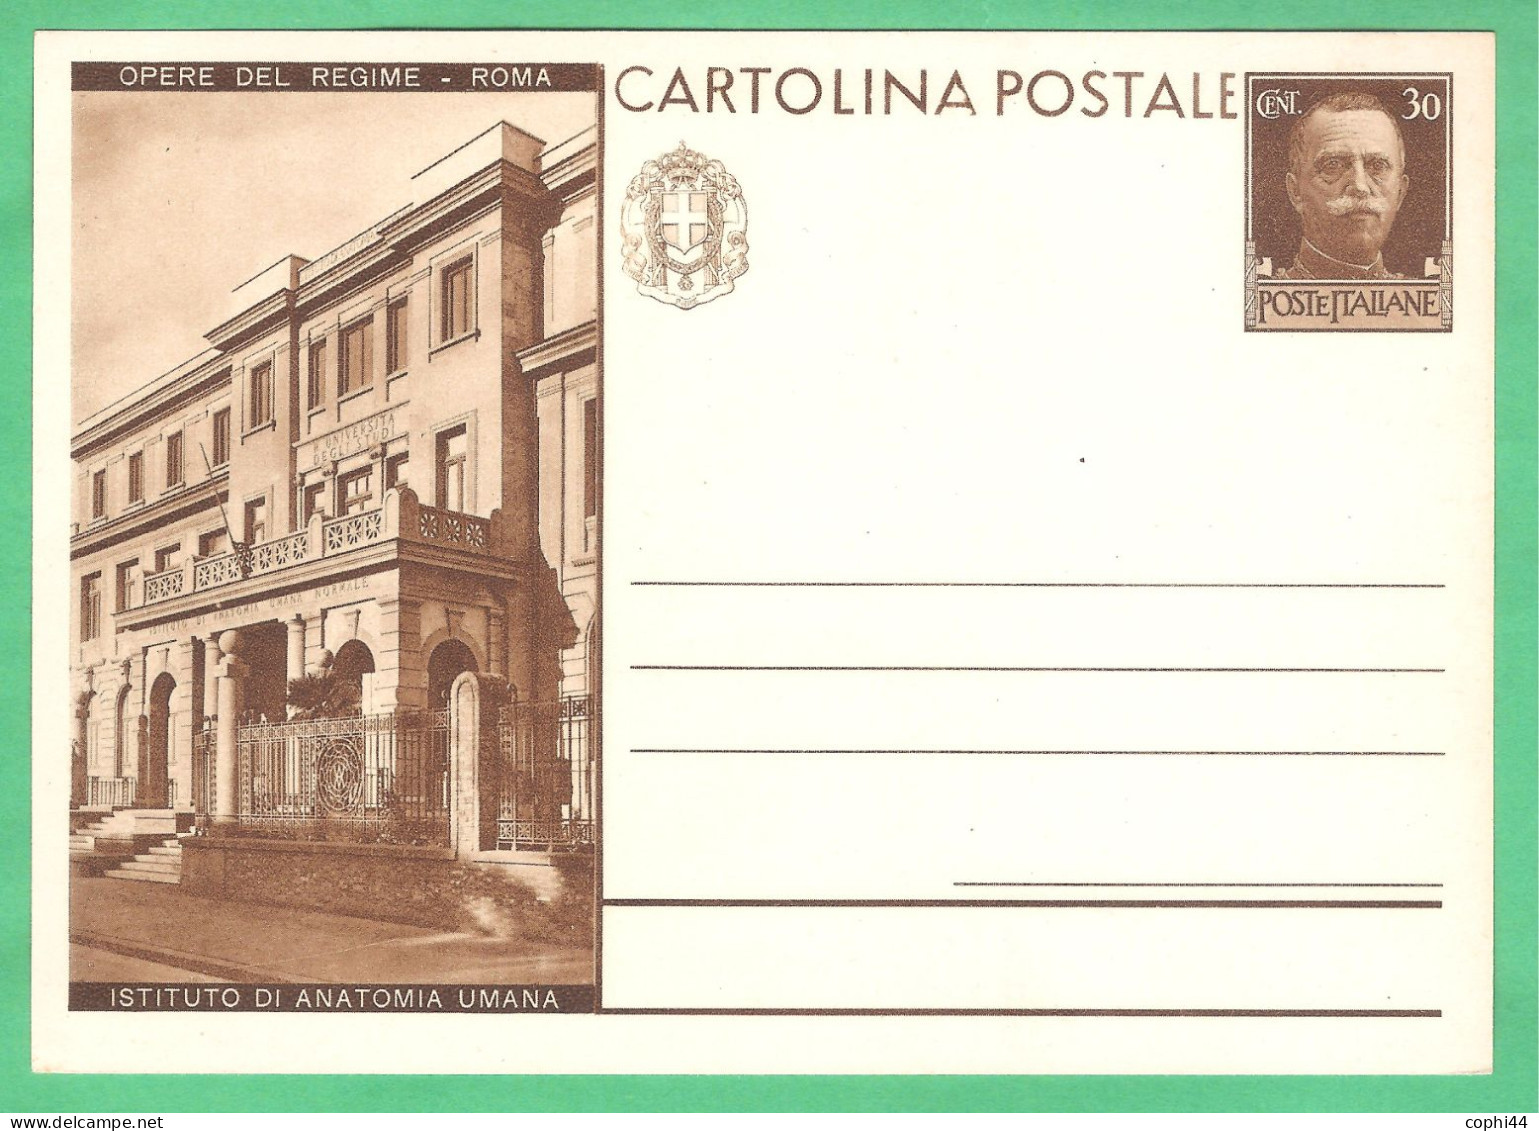 REGNO D'ITALIA 1931 CARTOLINA POSTALE VEIII OPERE DEL REGIME ISTITUTO DI ANATOMIA UM. 30c Bruno (FILAGRANO C70-10) NUOVA - Interi Postali